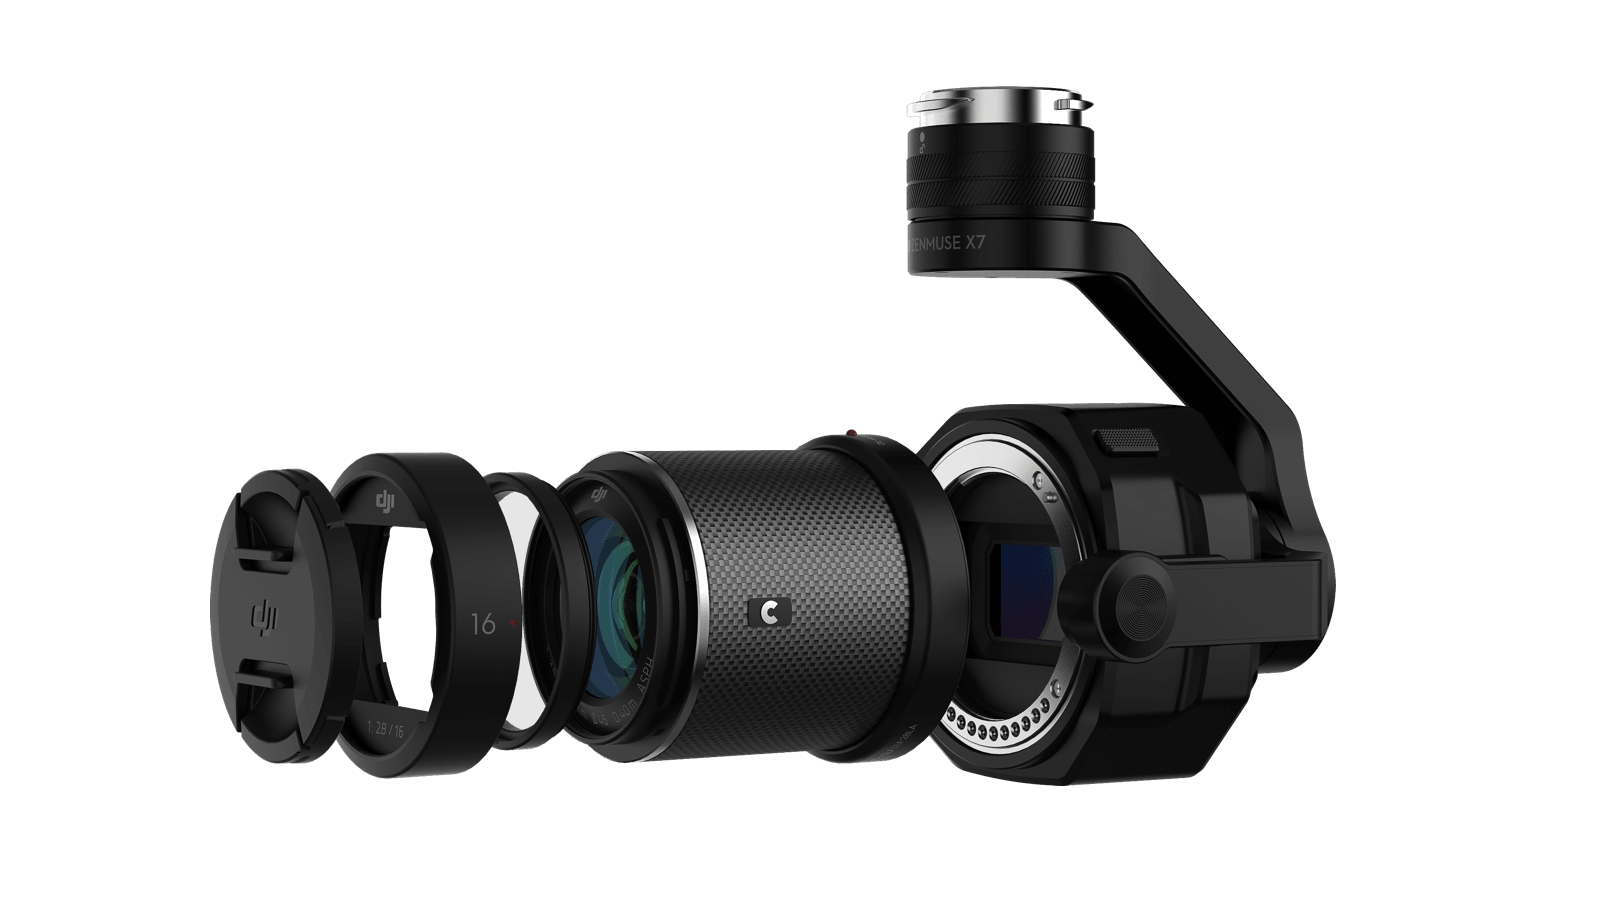 Inspire 2 Cinema Premium Combo with Zenmuse X7 camera 